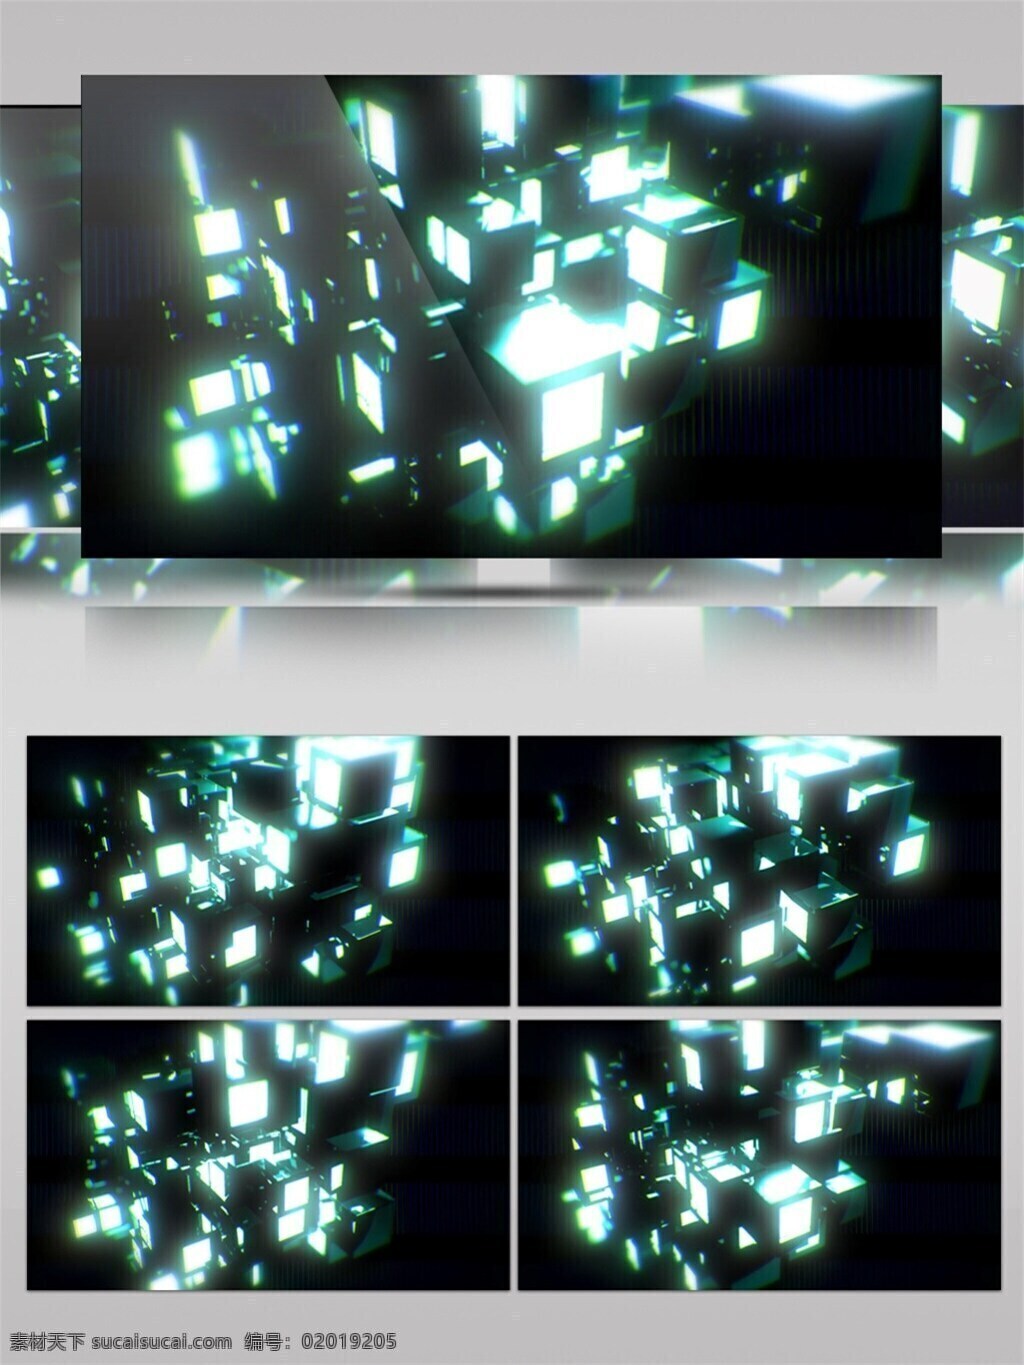 银白色 玻璃 高清 视频 炫酷以白色 碎片灯光 酒吧vj 华丽光转 三维动态类 几何魔法 空间几何变换 3d视频素材 特效视频素材